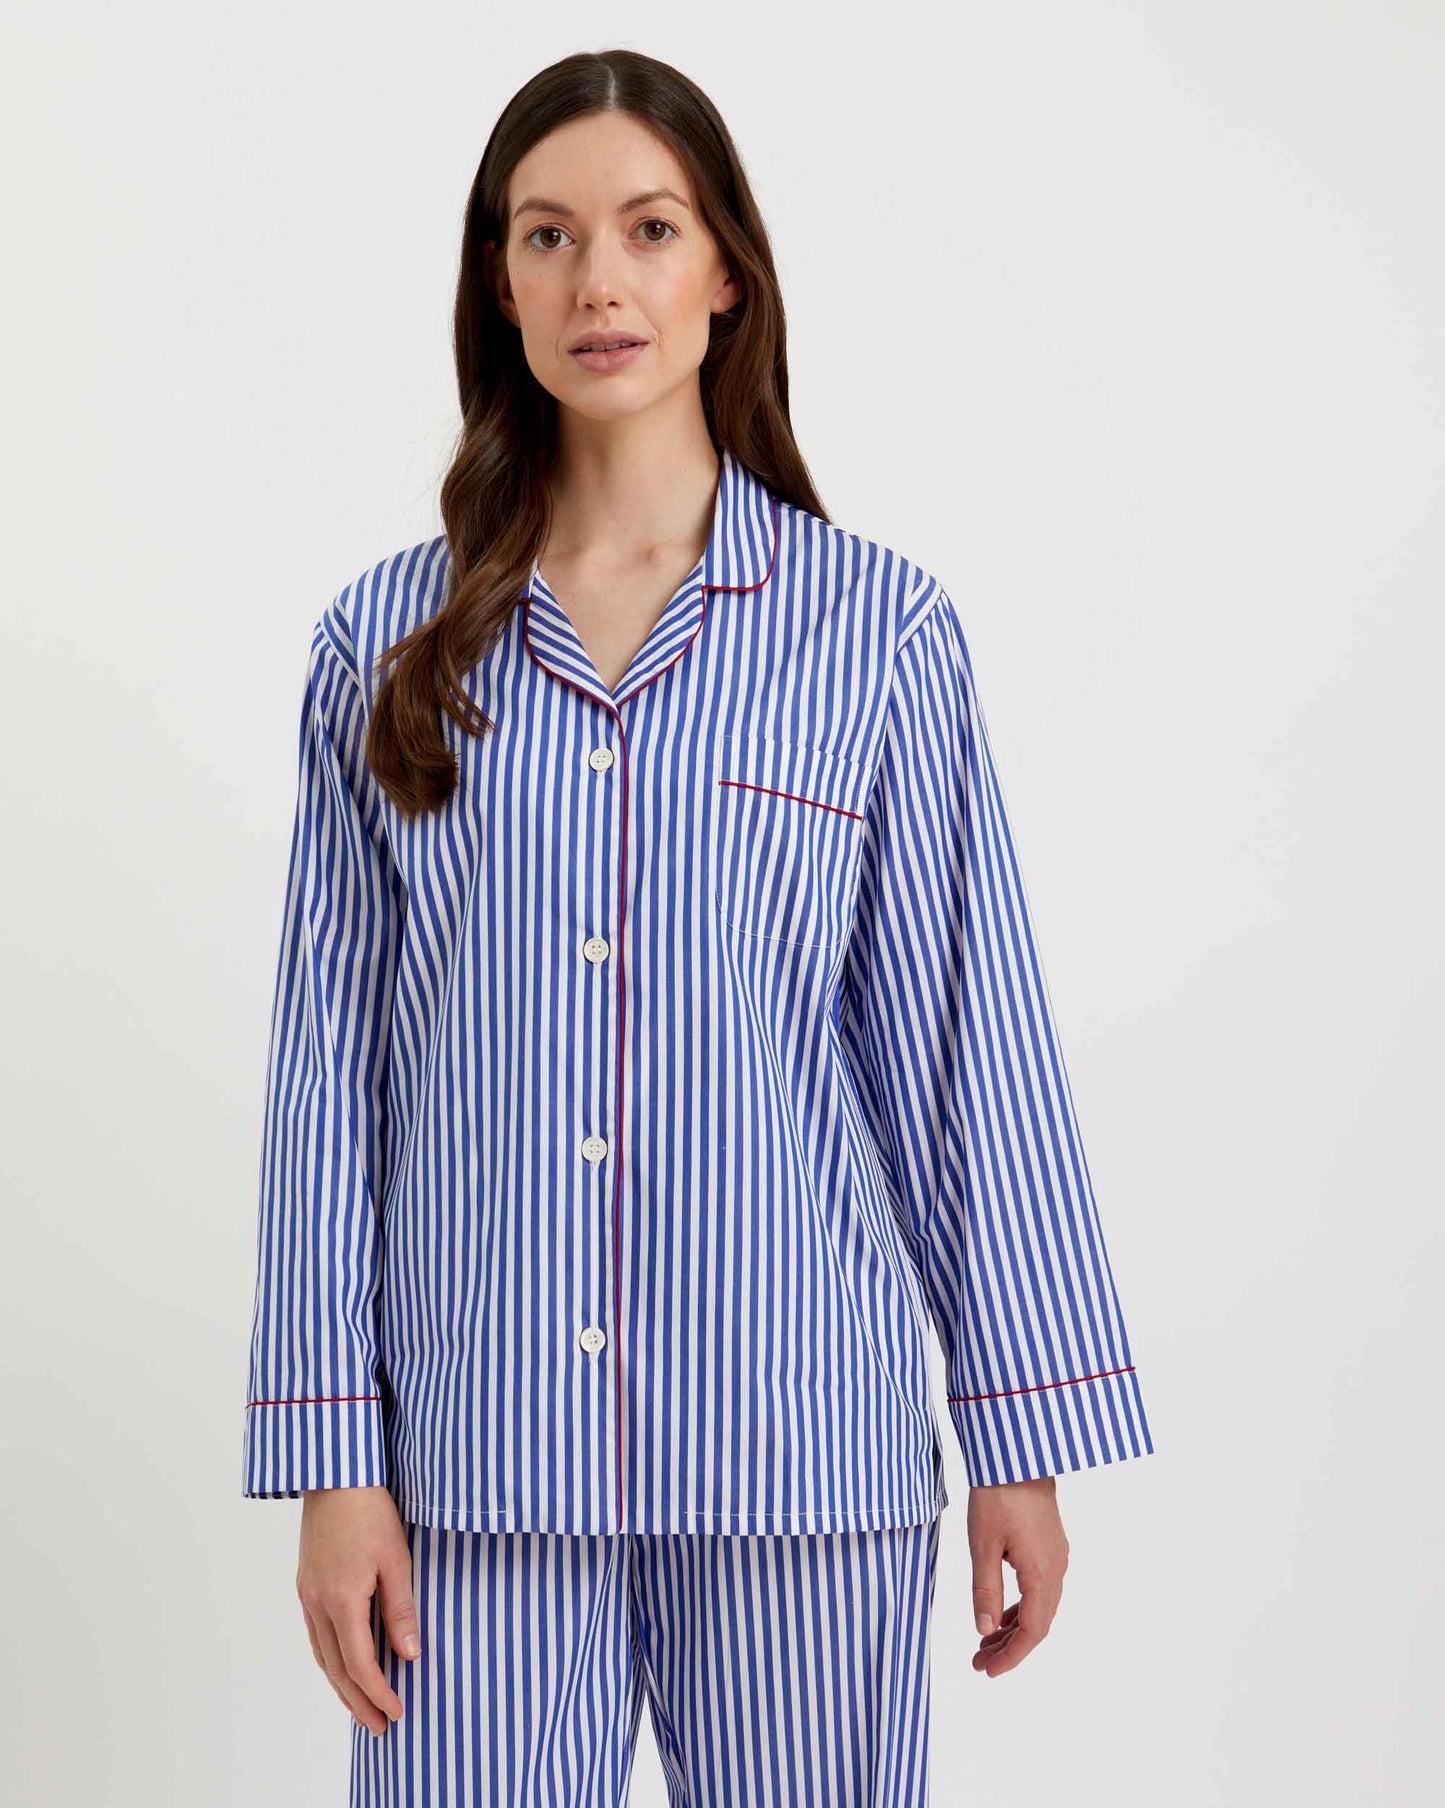 Loungewear Set Oxford Stripe 100% Cotton - Bella Babe by SK Nightsuit-Nightdress-Robes-Silk-Satin-Nighty-Gown-Nightwear-Shorts-Pajamas-Nightsuit-for-women-men-bathrobe-Satin-dress-cotton- 